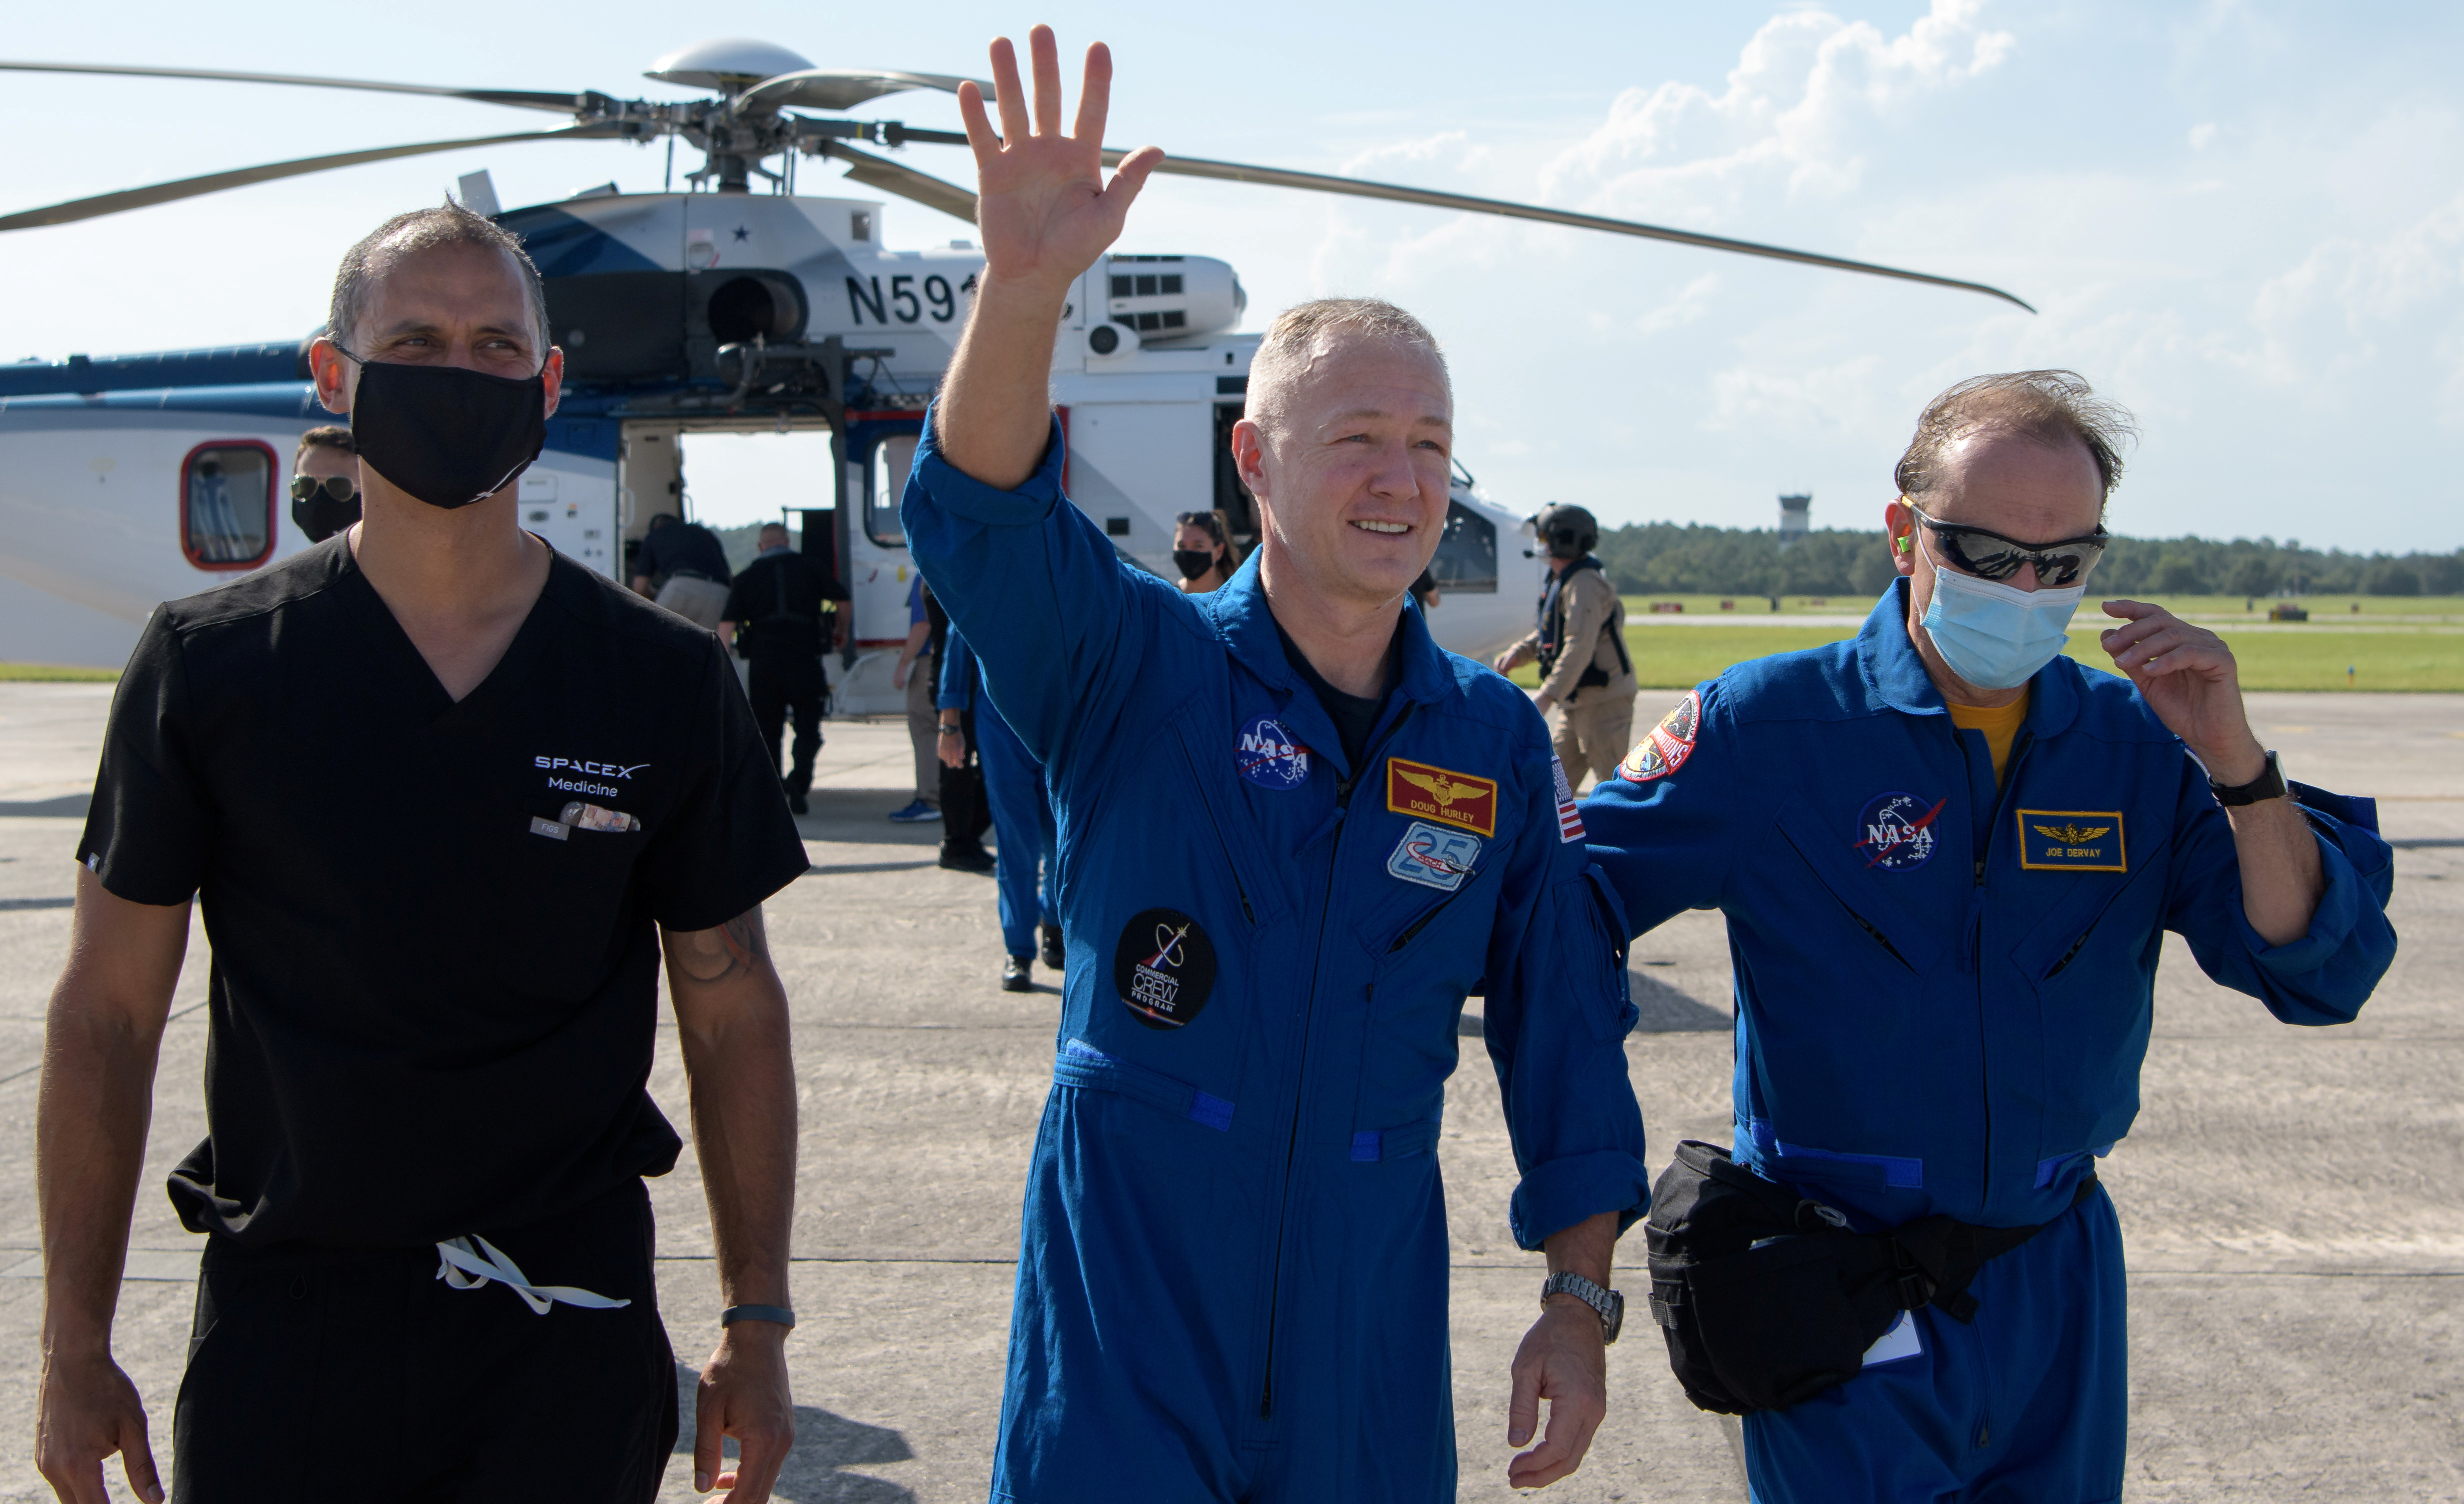 EN FOTOS: La inédita llegada a la Tierra de los astronautas de SpaceX